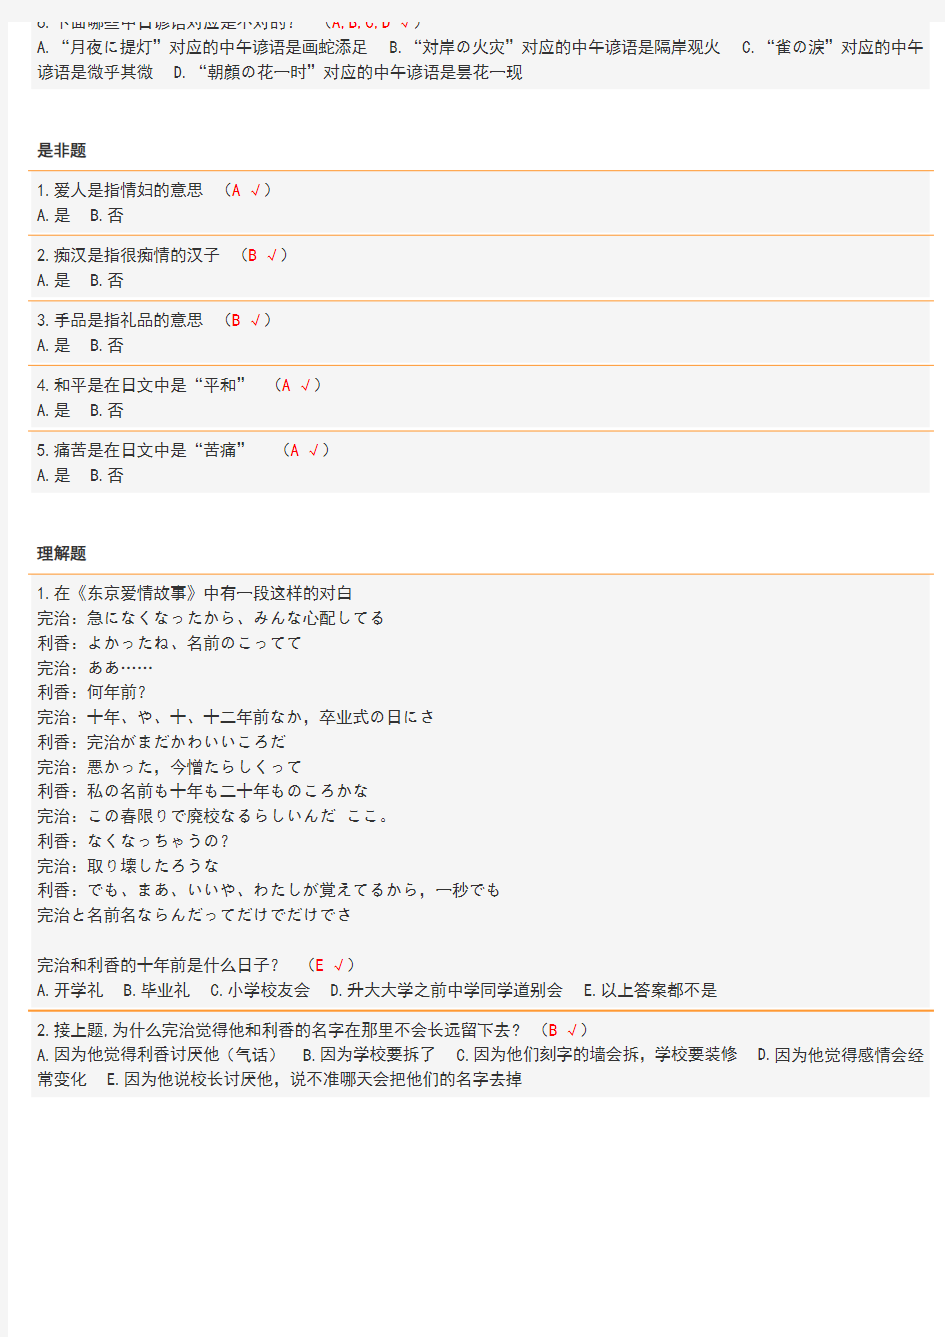 [资料]日语中汉字的入门考试